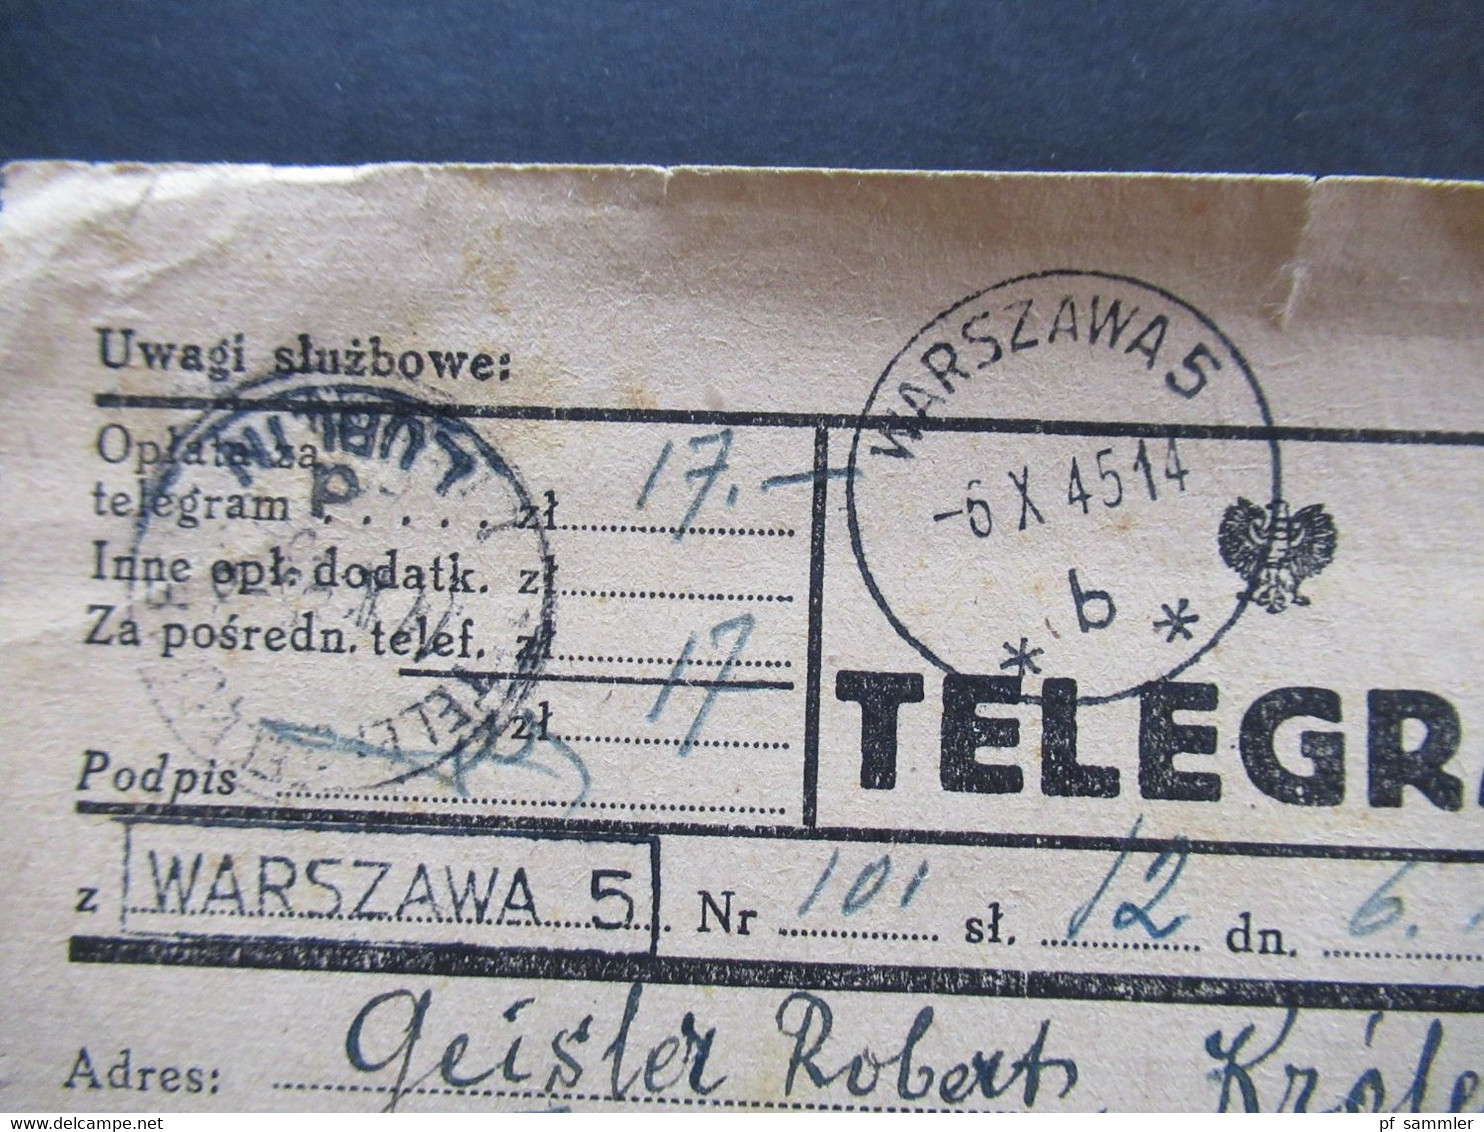 Polen 6.10.1945 (nach Kriegsende) Telegram Aus Lublin Nach Warschau Mit Stempel Ra1 Warszawa 5 Und 2 Weitere Stempel - Briefe U. Dokumente